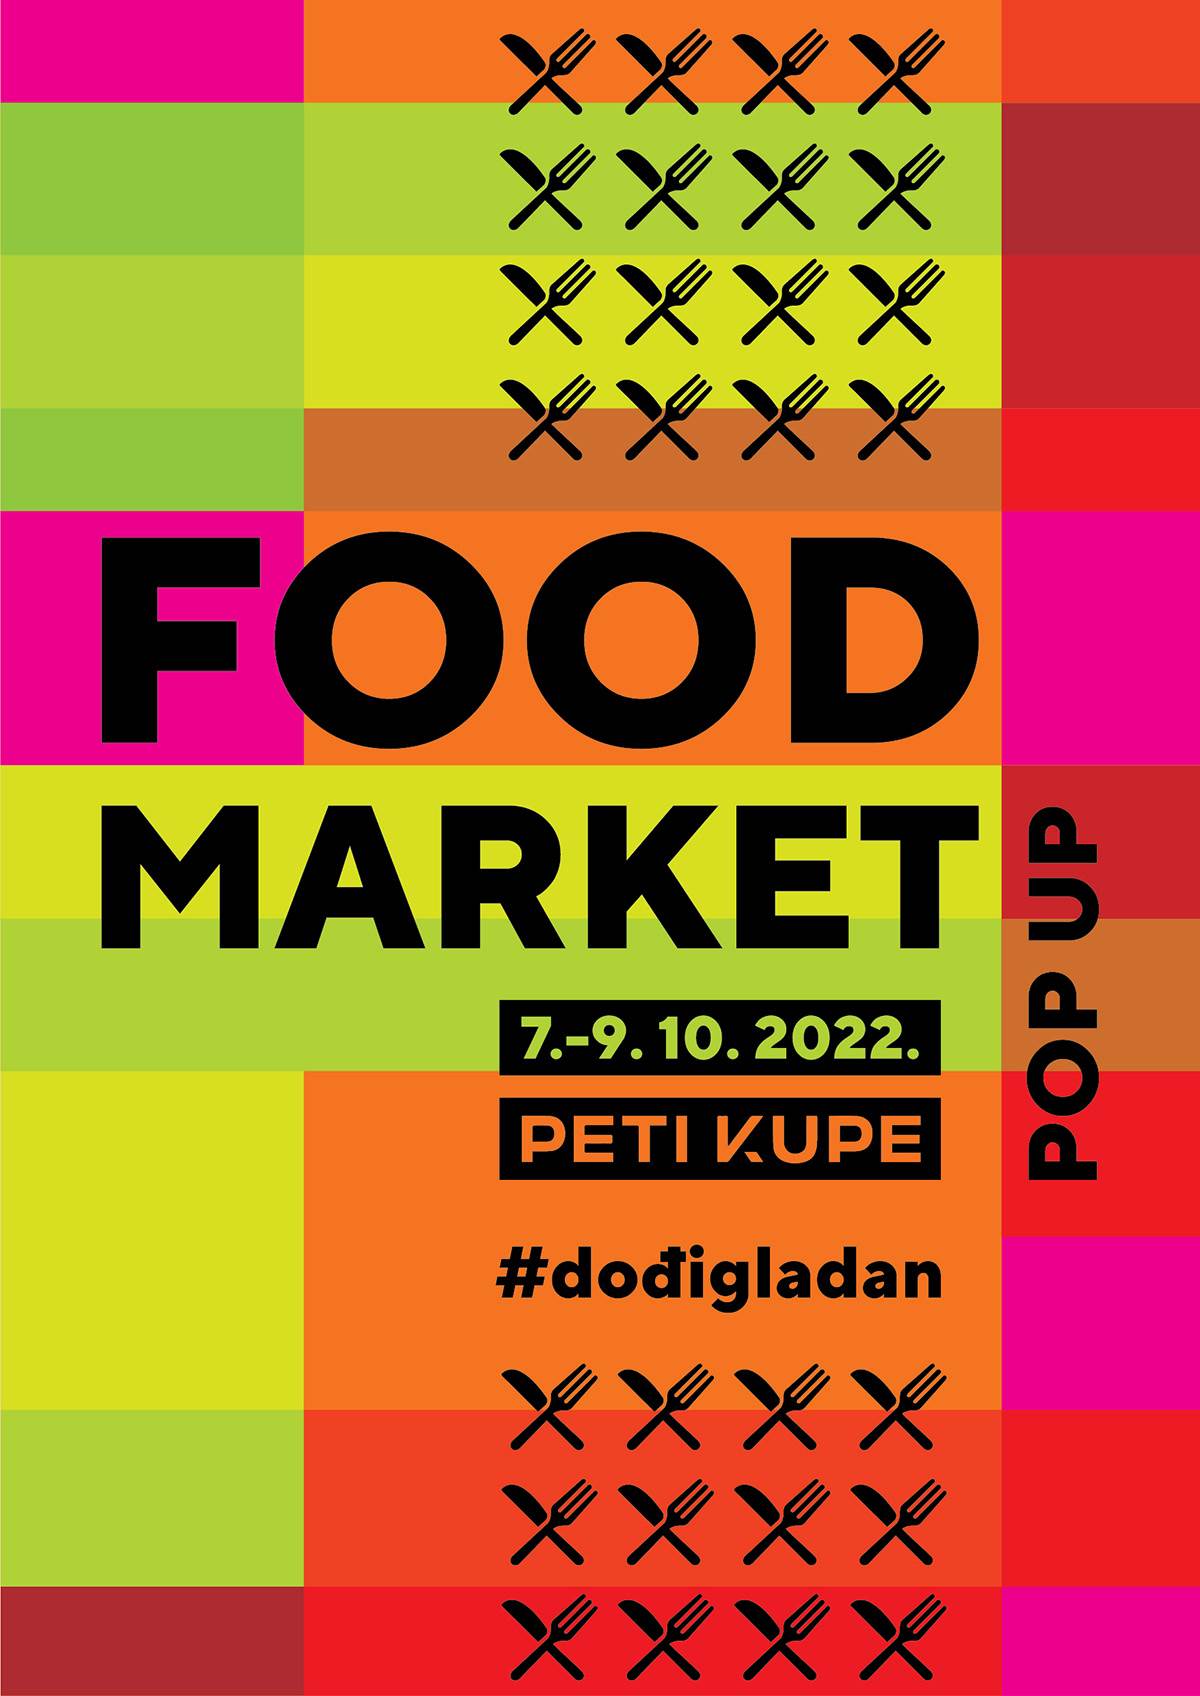 Food Market_01 PR 1200 (1).jpg